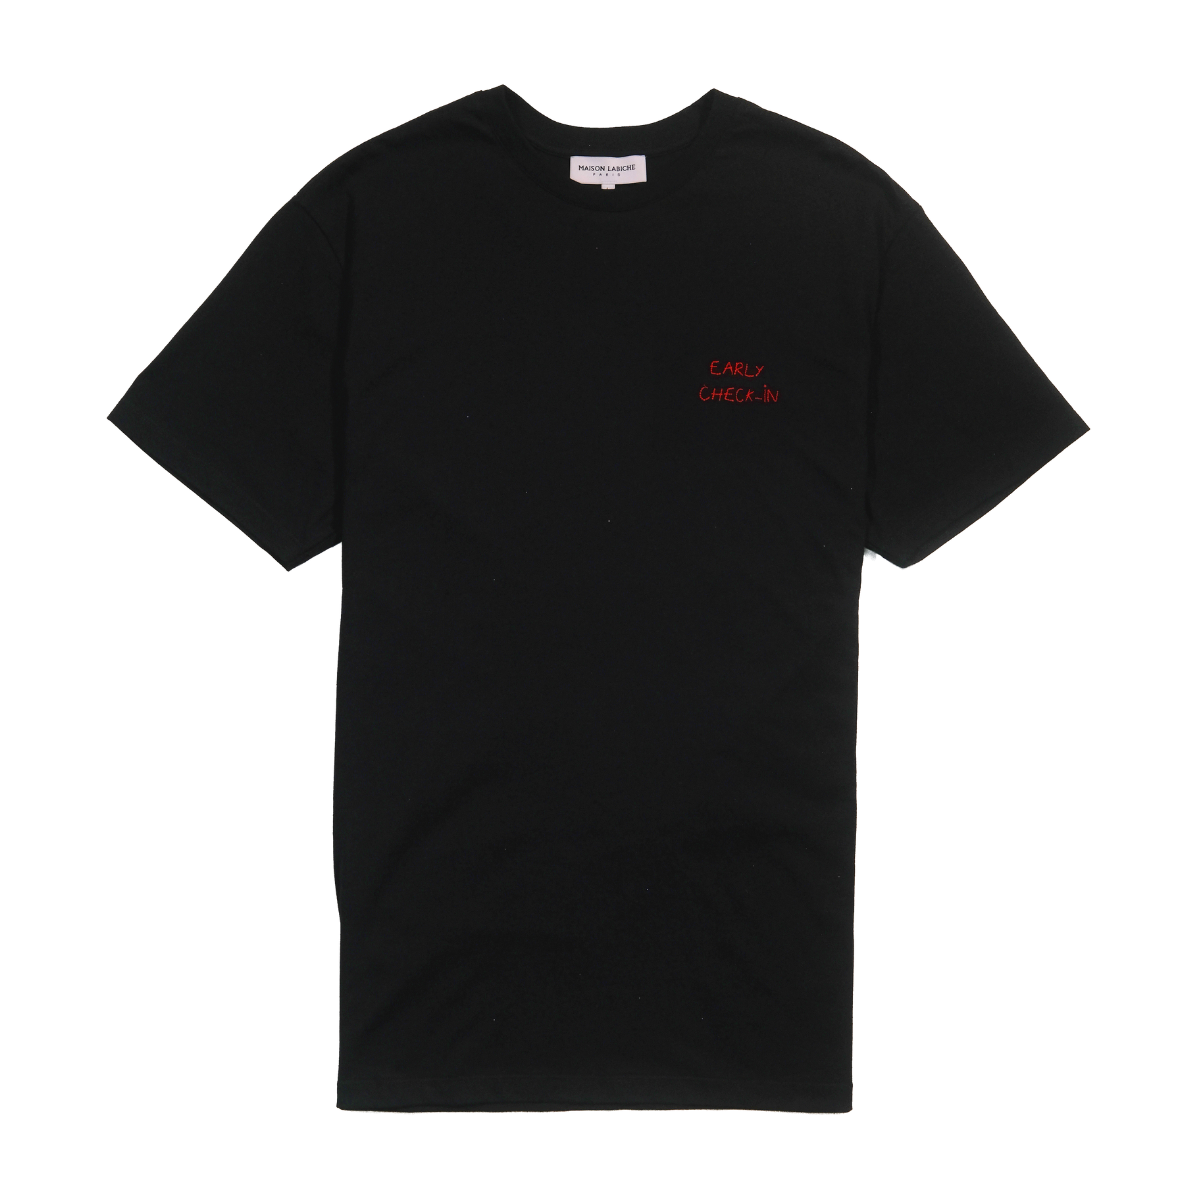 Maison Labiche | t-shirt for men - kapok exclusive collaboration ...